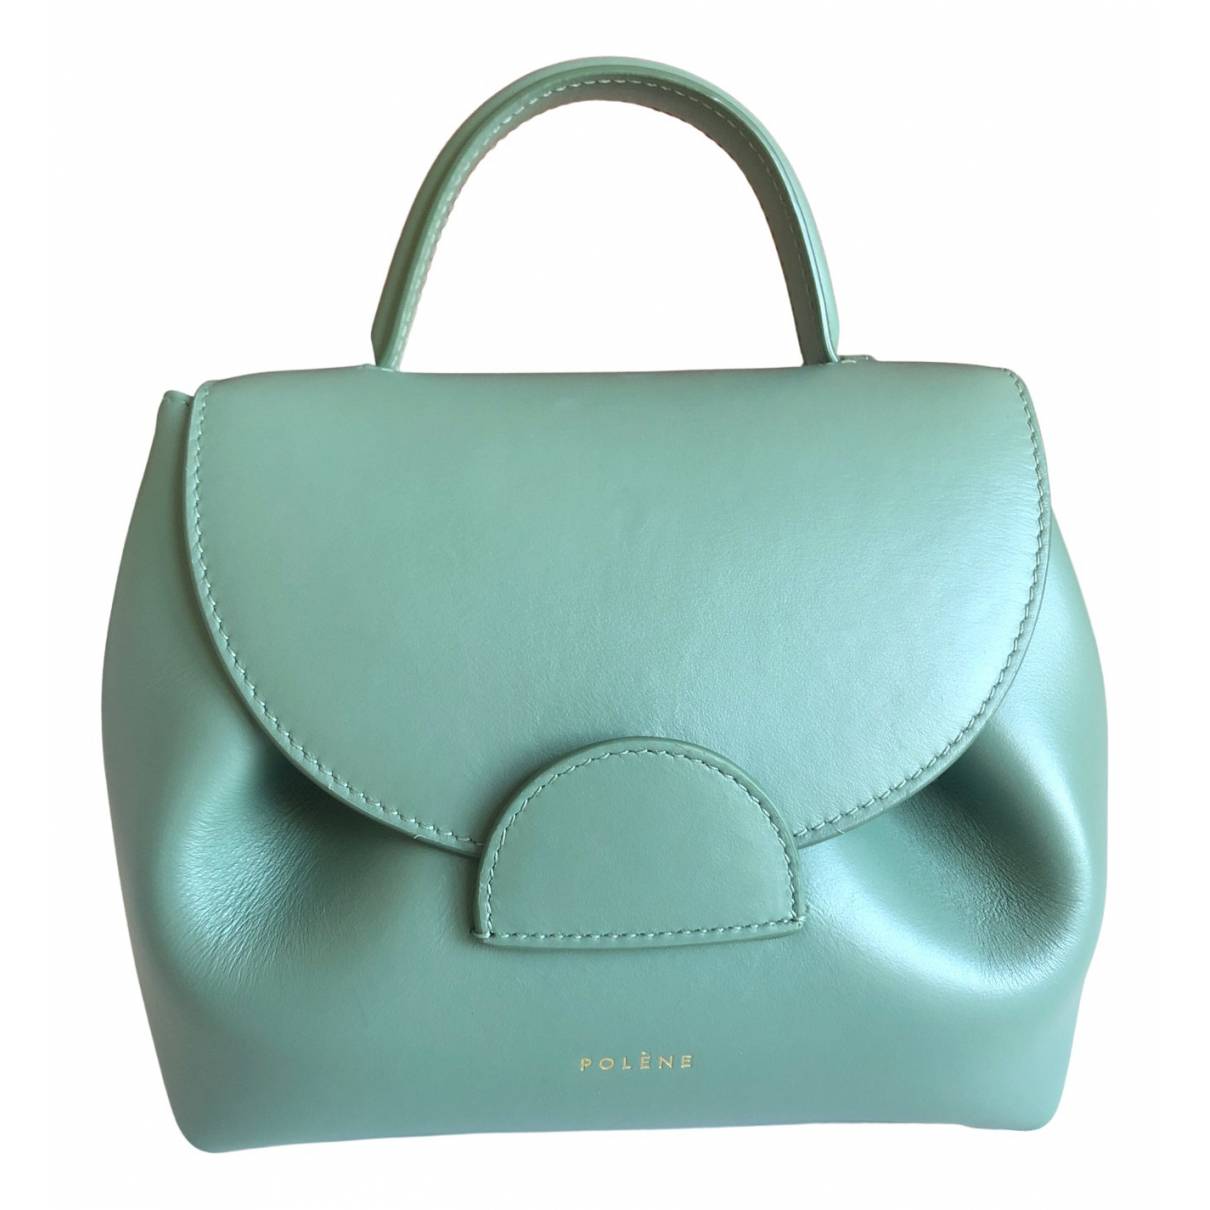 Numéro un mini leather handbag Polene Green in Leather - 33941533